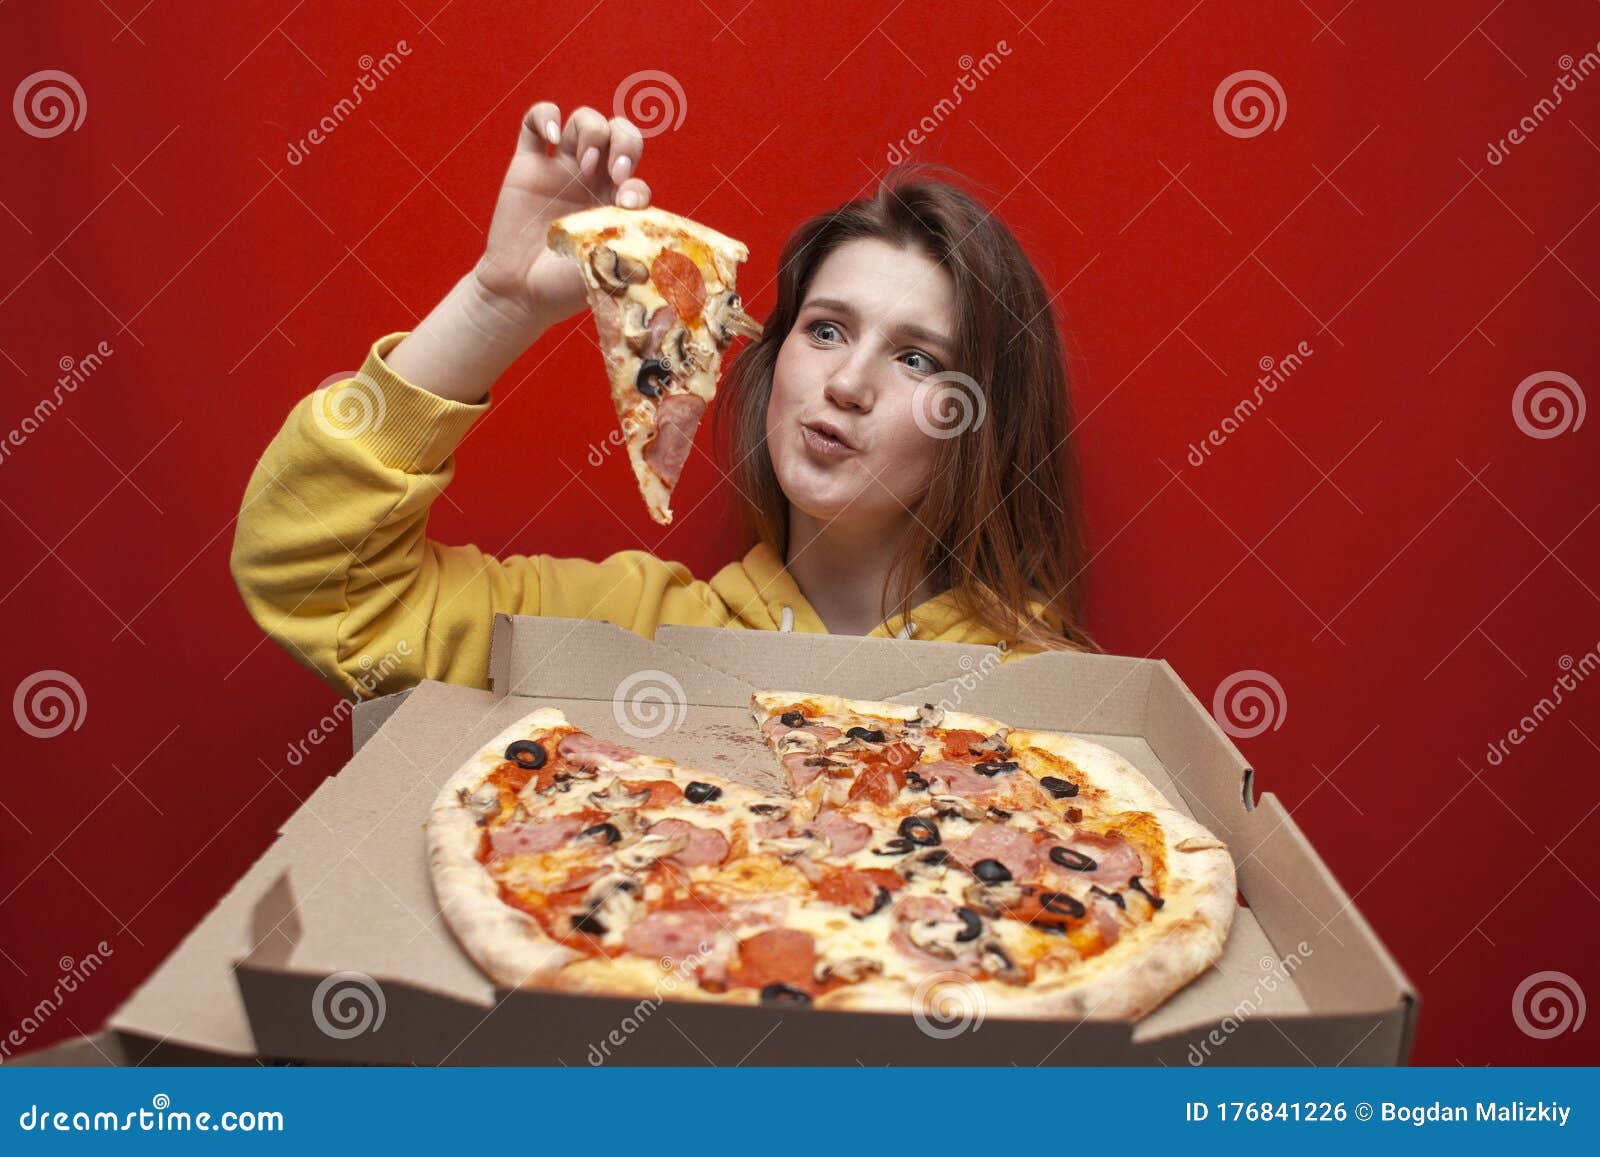 фотошоп девушка из куска пиццы фото 20